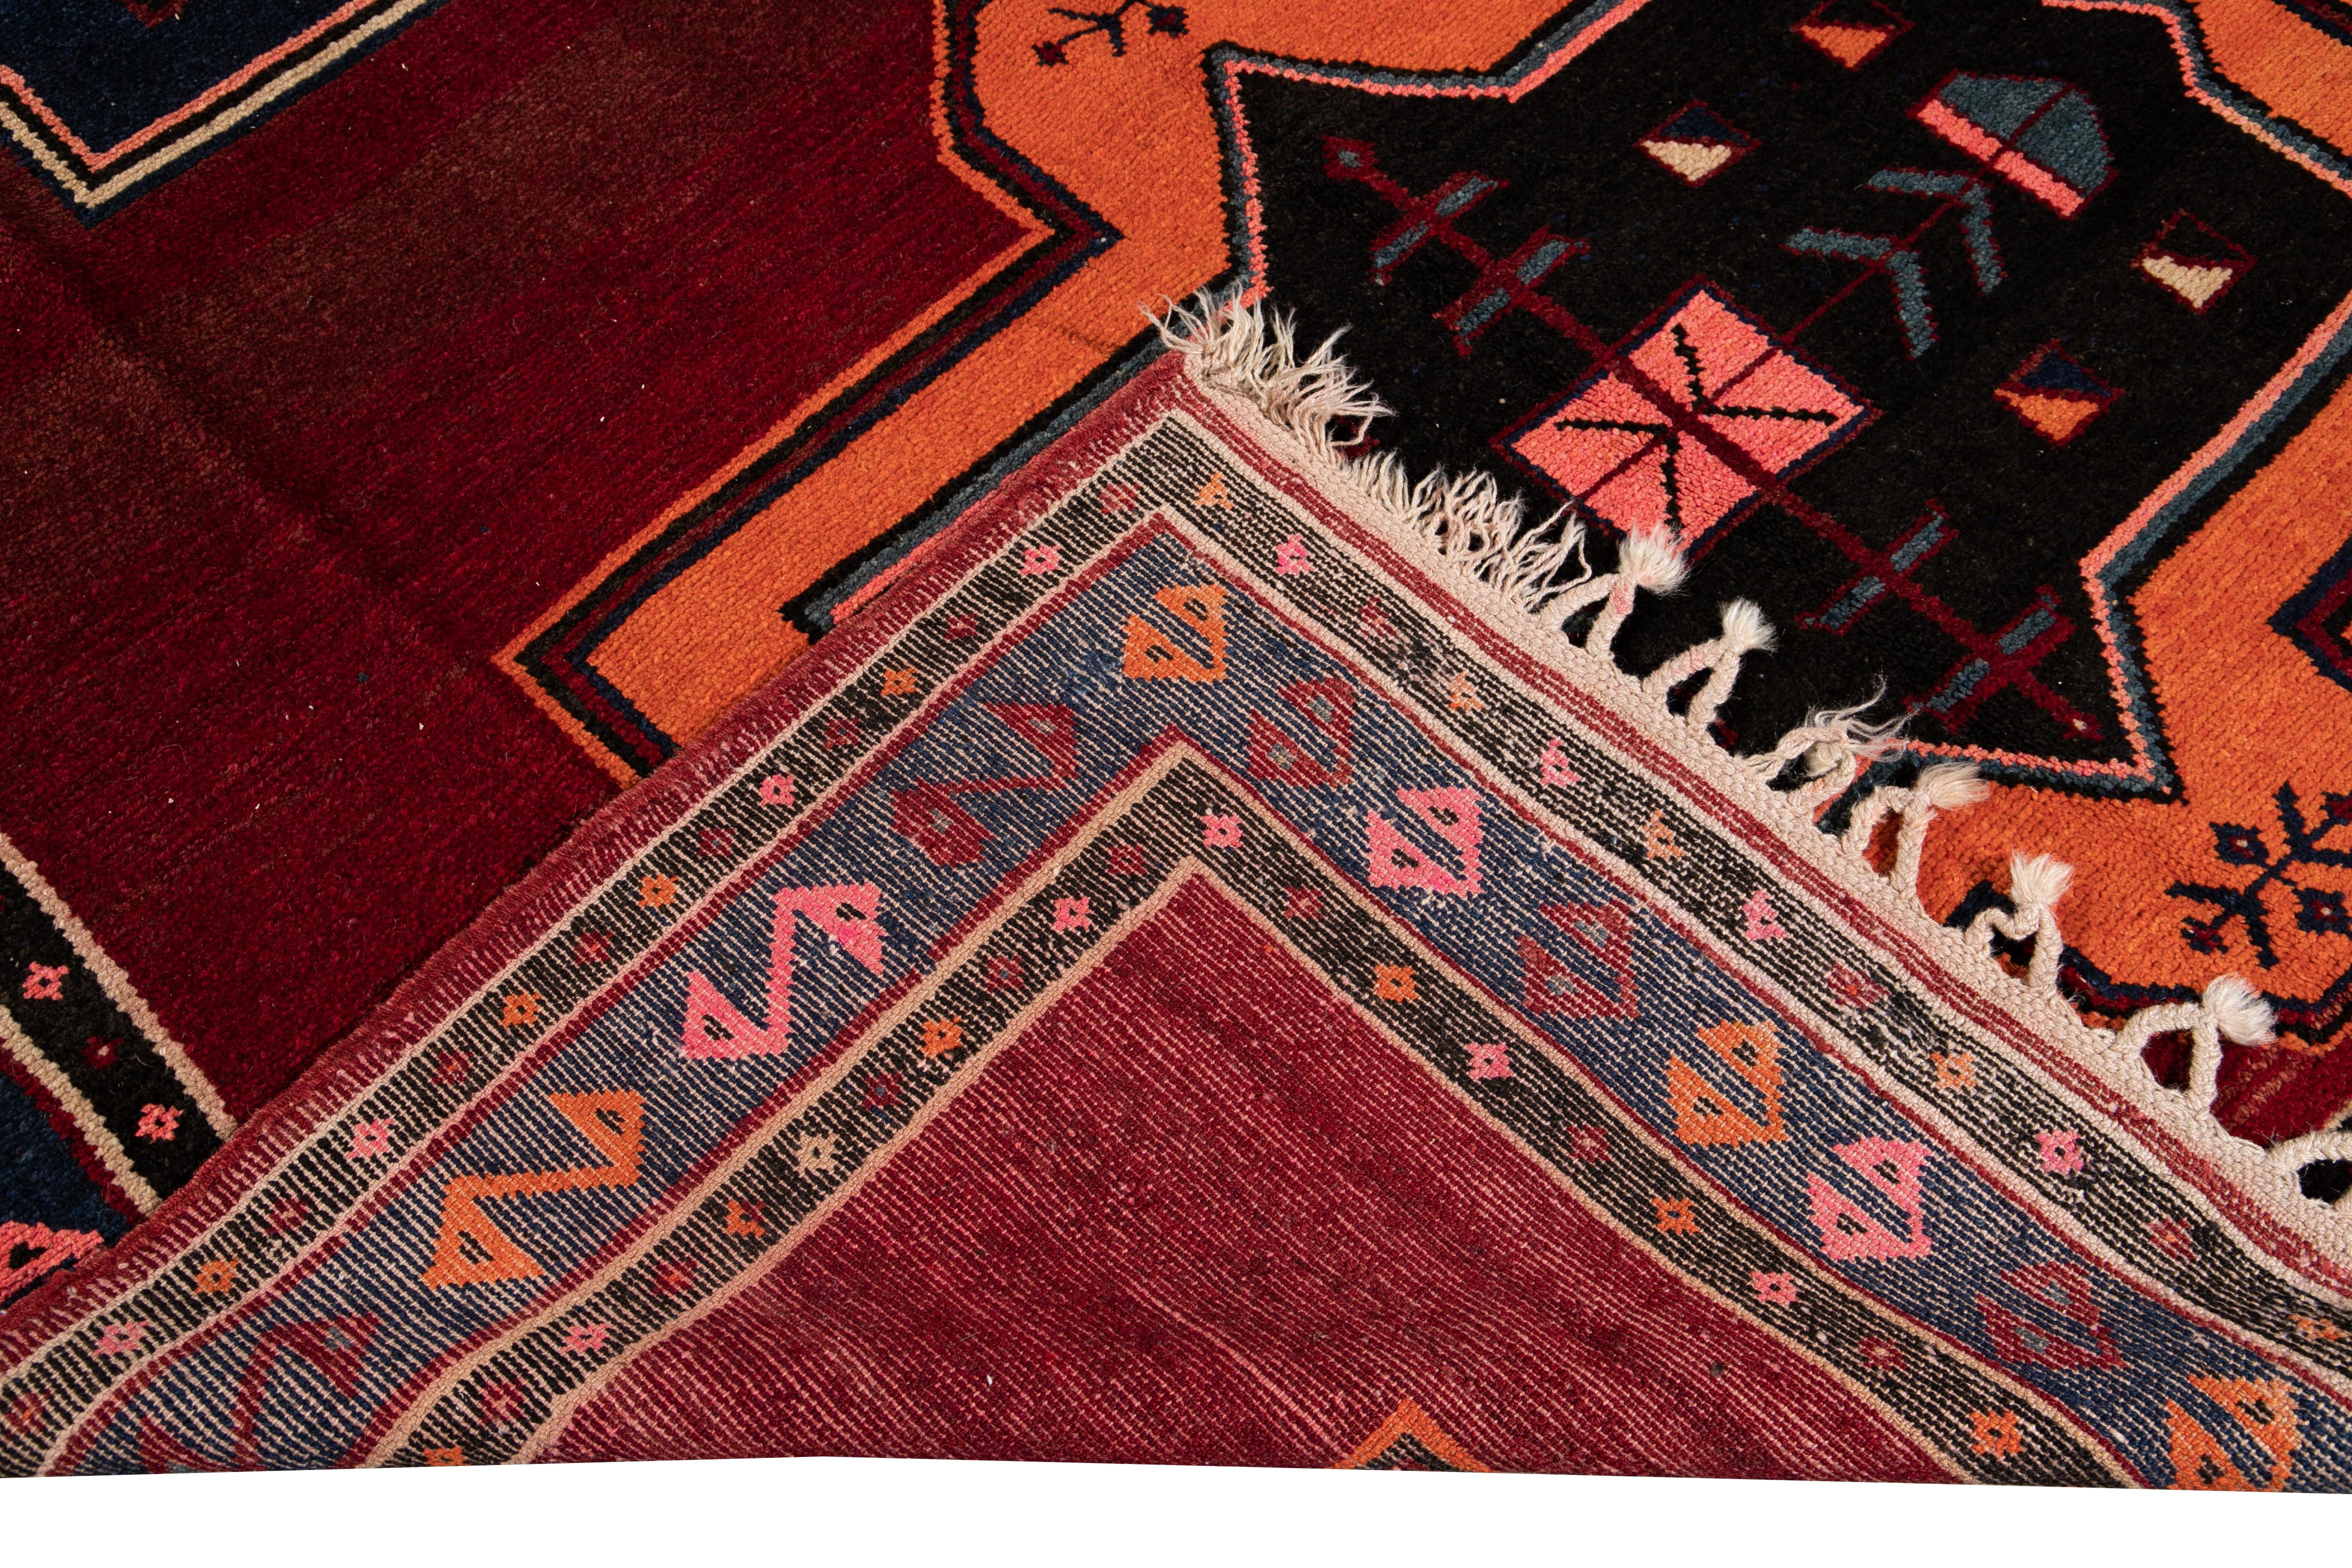 Schöner alter türkischer handgeknüpfter Wollteppich mit rotem Feld. Dieser türkische Teppich hat einen blauen und braunen Rahmen und mehrfarbige Akzente in einem prächtigen geometrischen Tribal-Muster.

Dieser Teppich misst: 7'7